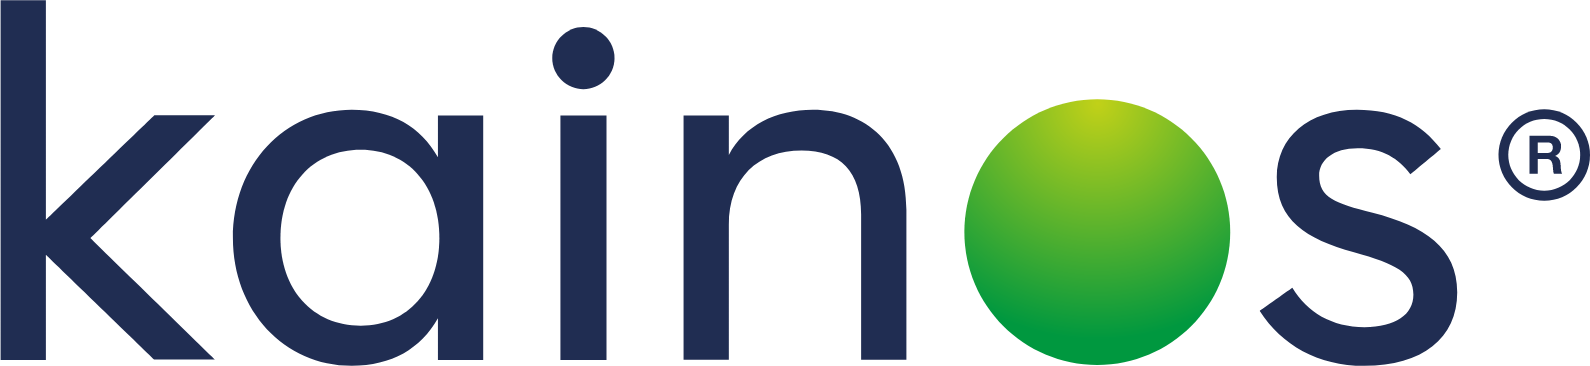 Kainos Group logo large (transparent PNG)